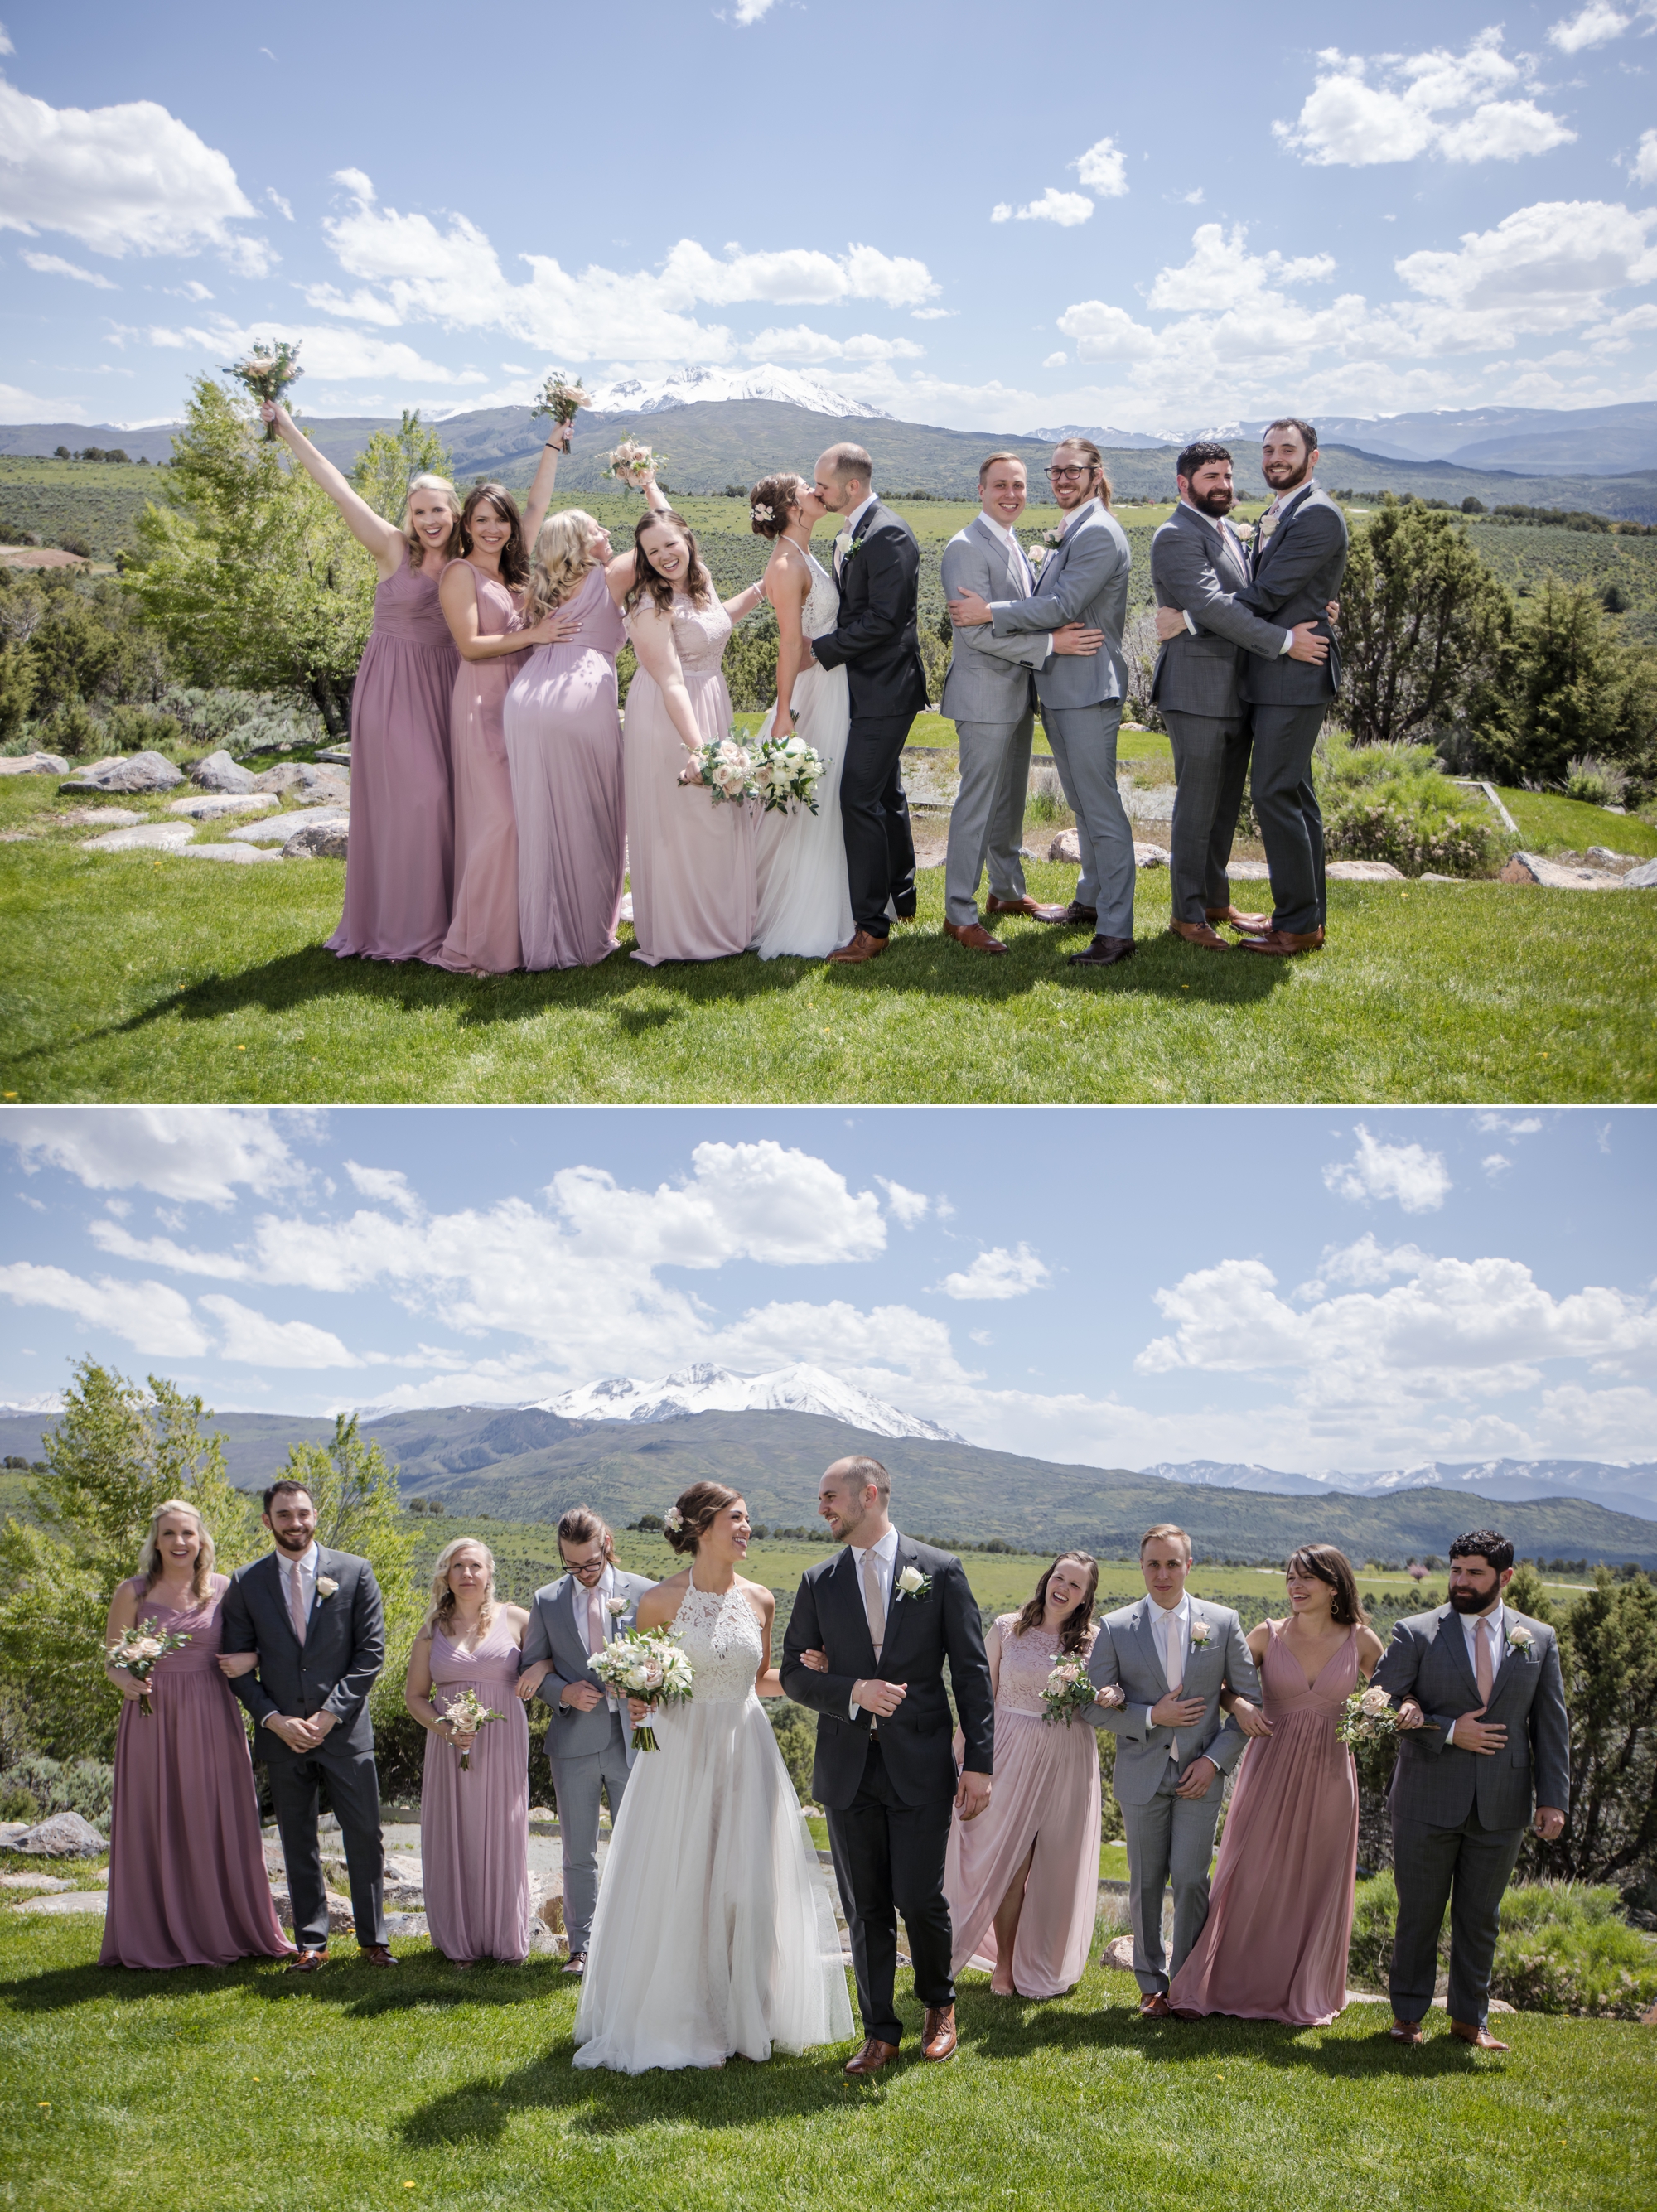 Wedding party portraits in Carbondale Colorado